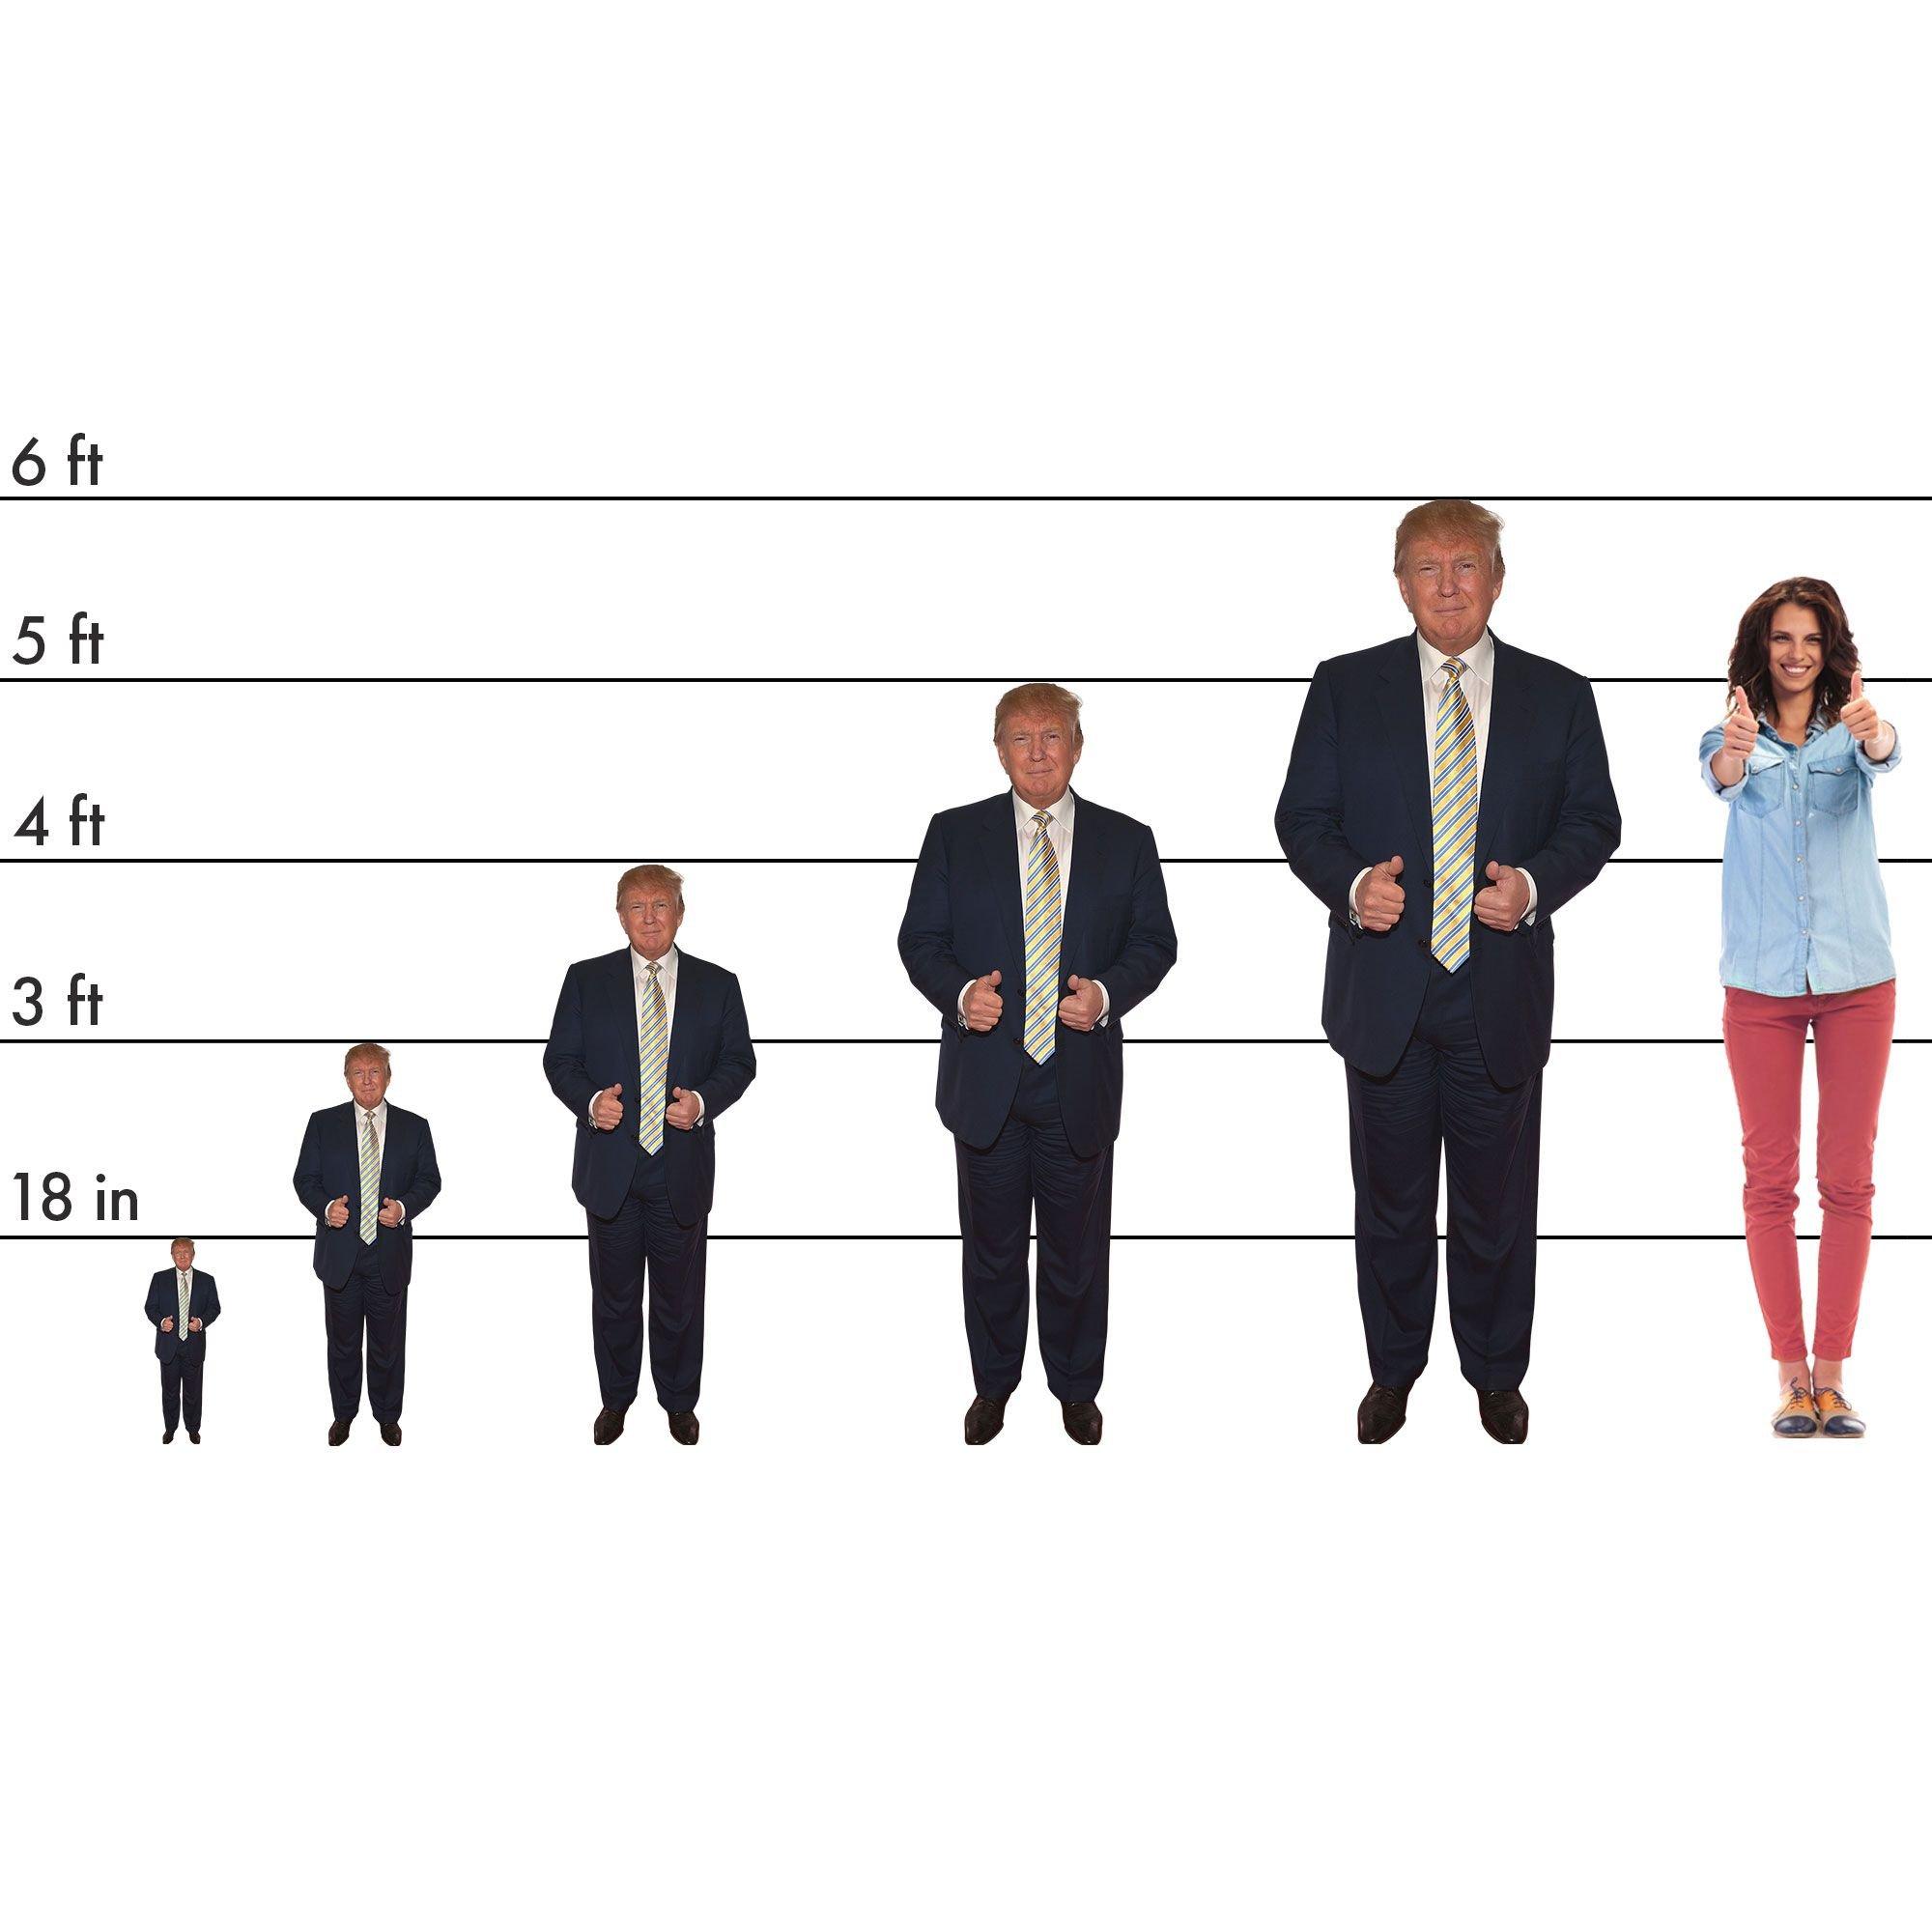 Donald Trump Life-Size Cardboard Cutout, 6ft